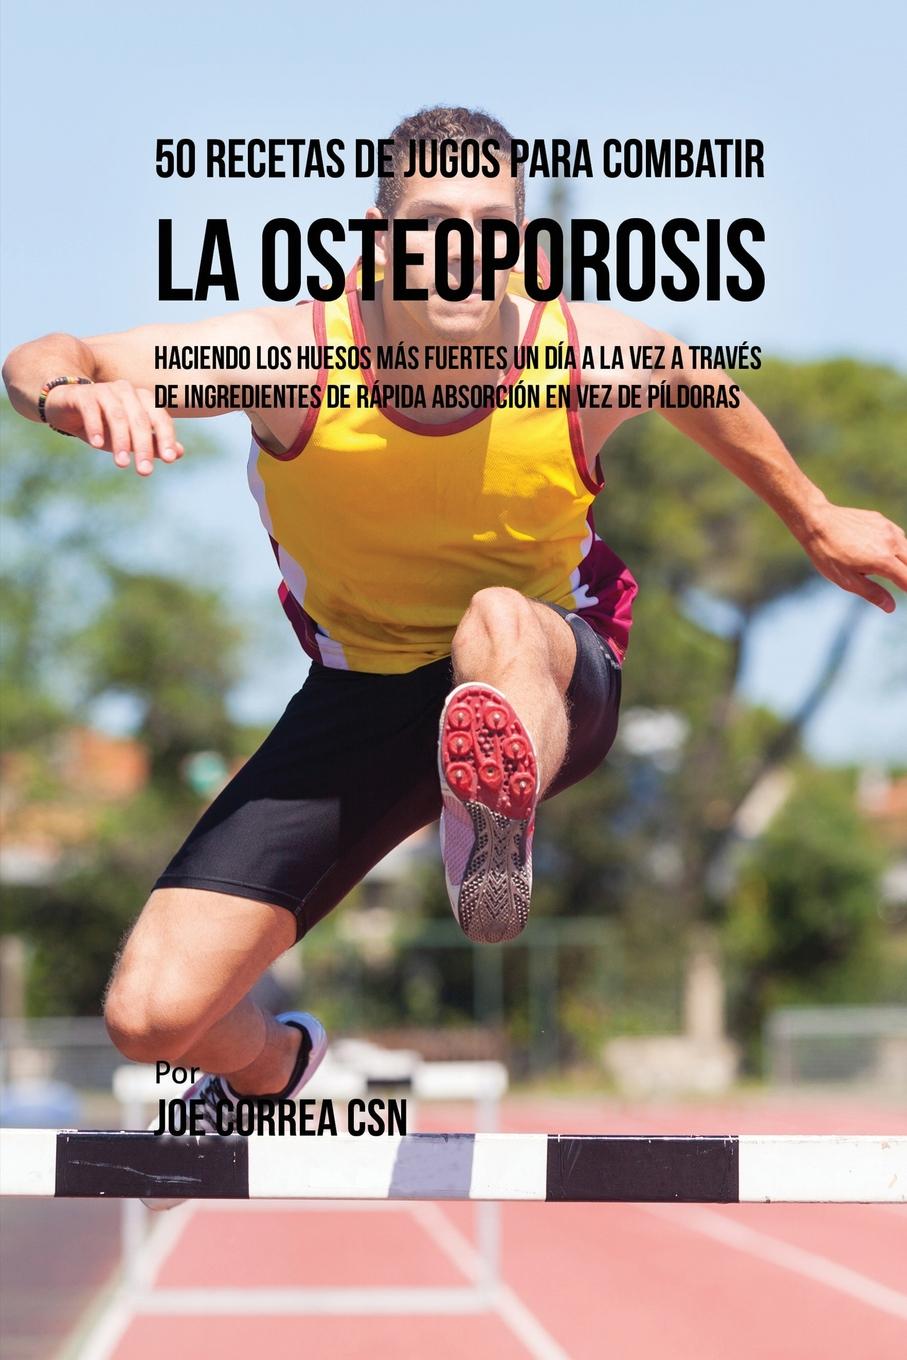 Joe Correa 50 Recetas de Jugos Para Combatir la Osteoporosis. Haciendo los Huesos Mas Fuertes Un Dia a la Vez a Traves de Ingredientes de Rapida Absorcion En Vez de Pildoras